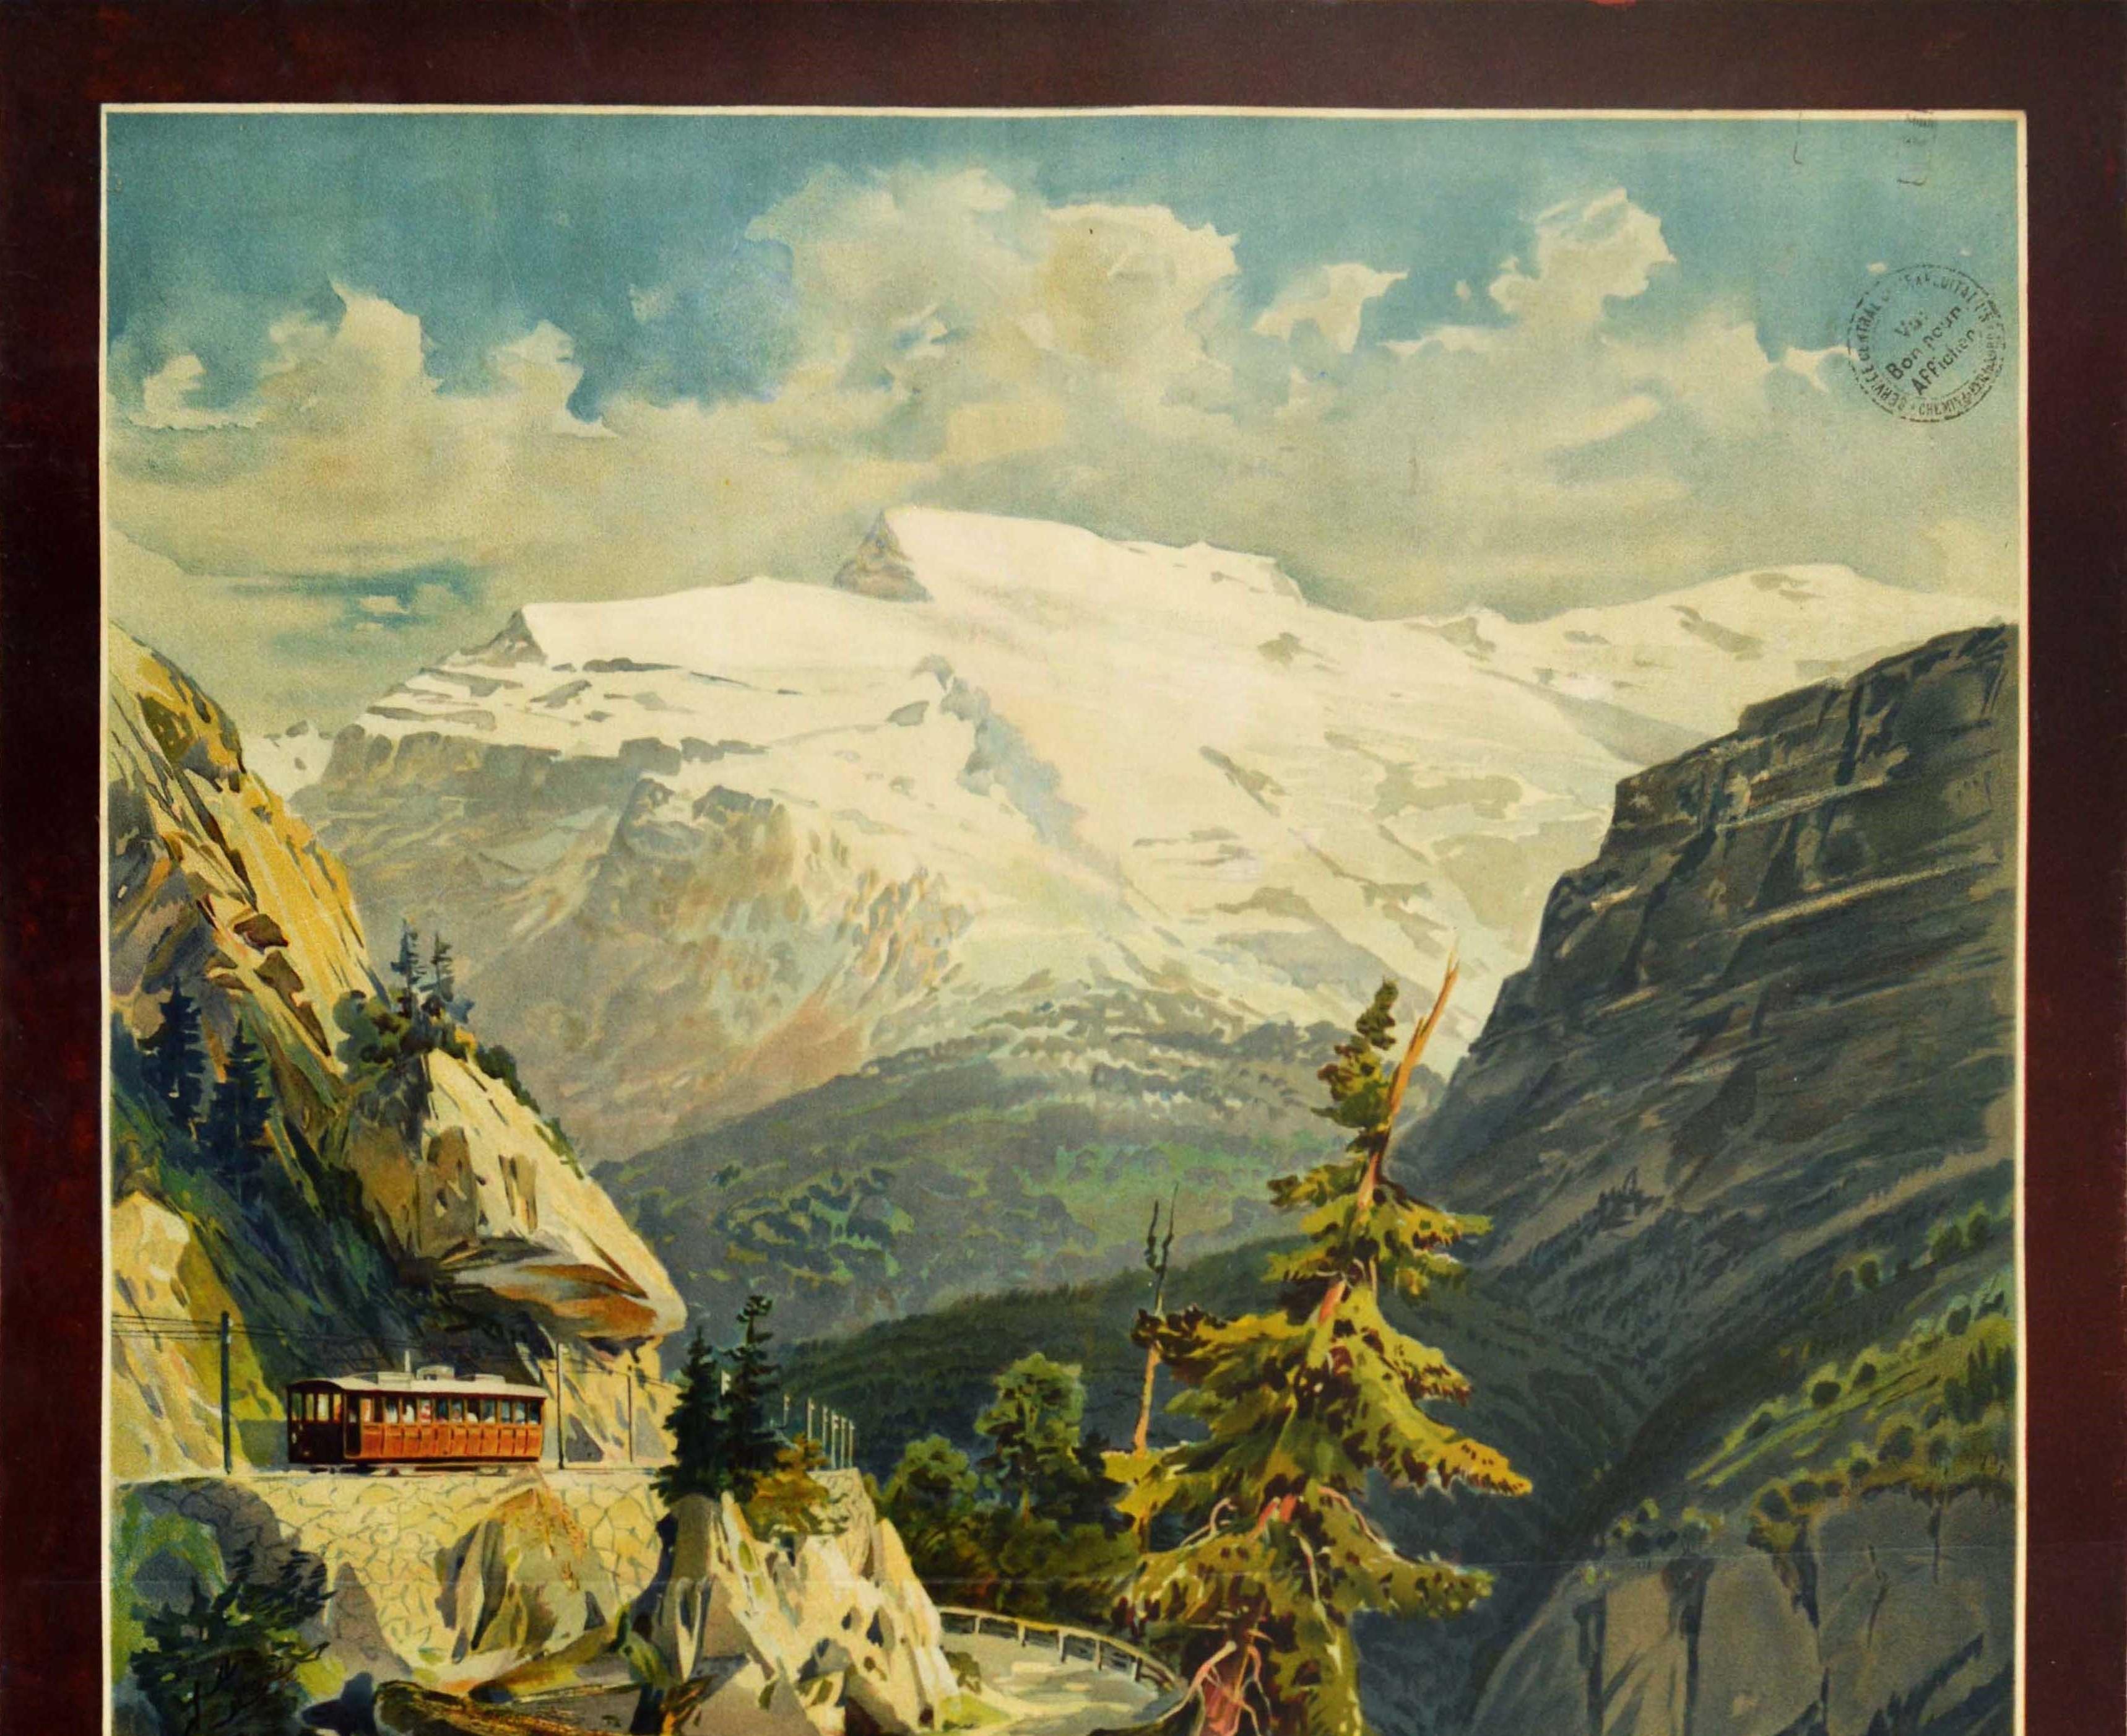 Affiche de voyage ancienne originale promouvant le chemin de fer Stansstad-Engelberg Bahn en Suisse, présentant une peinture scénique de l'artiste et cartographe autrichien Anton Reckziegel (1865-1936) d'une vallée montagneuse rocheuse traversée par